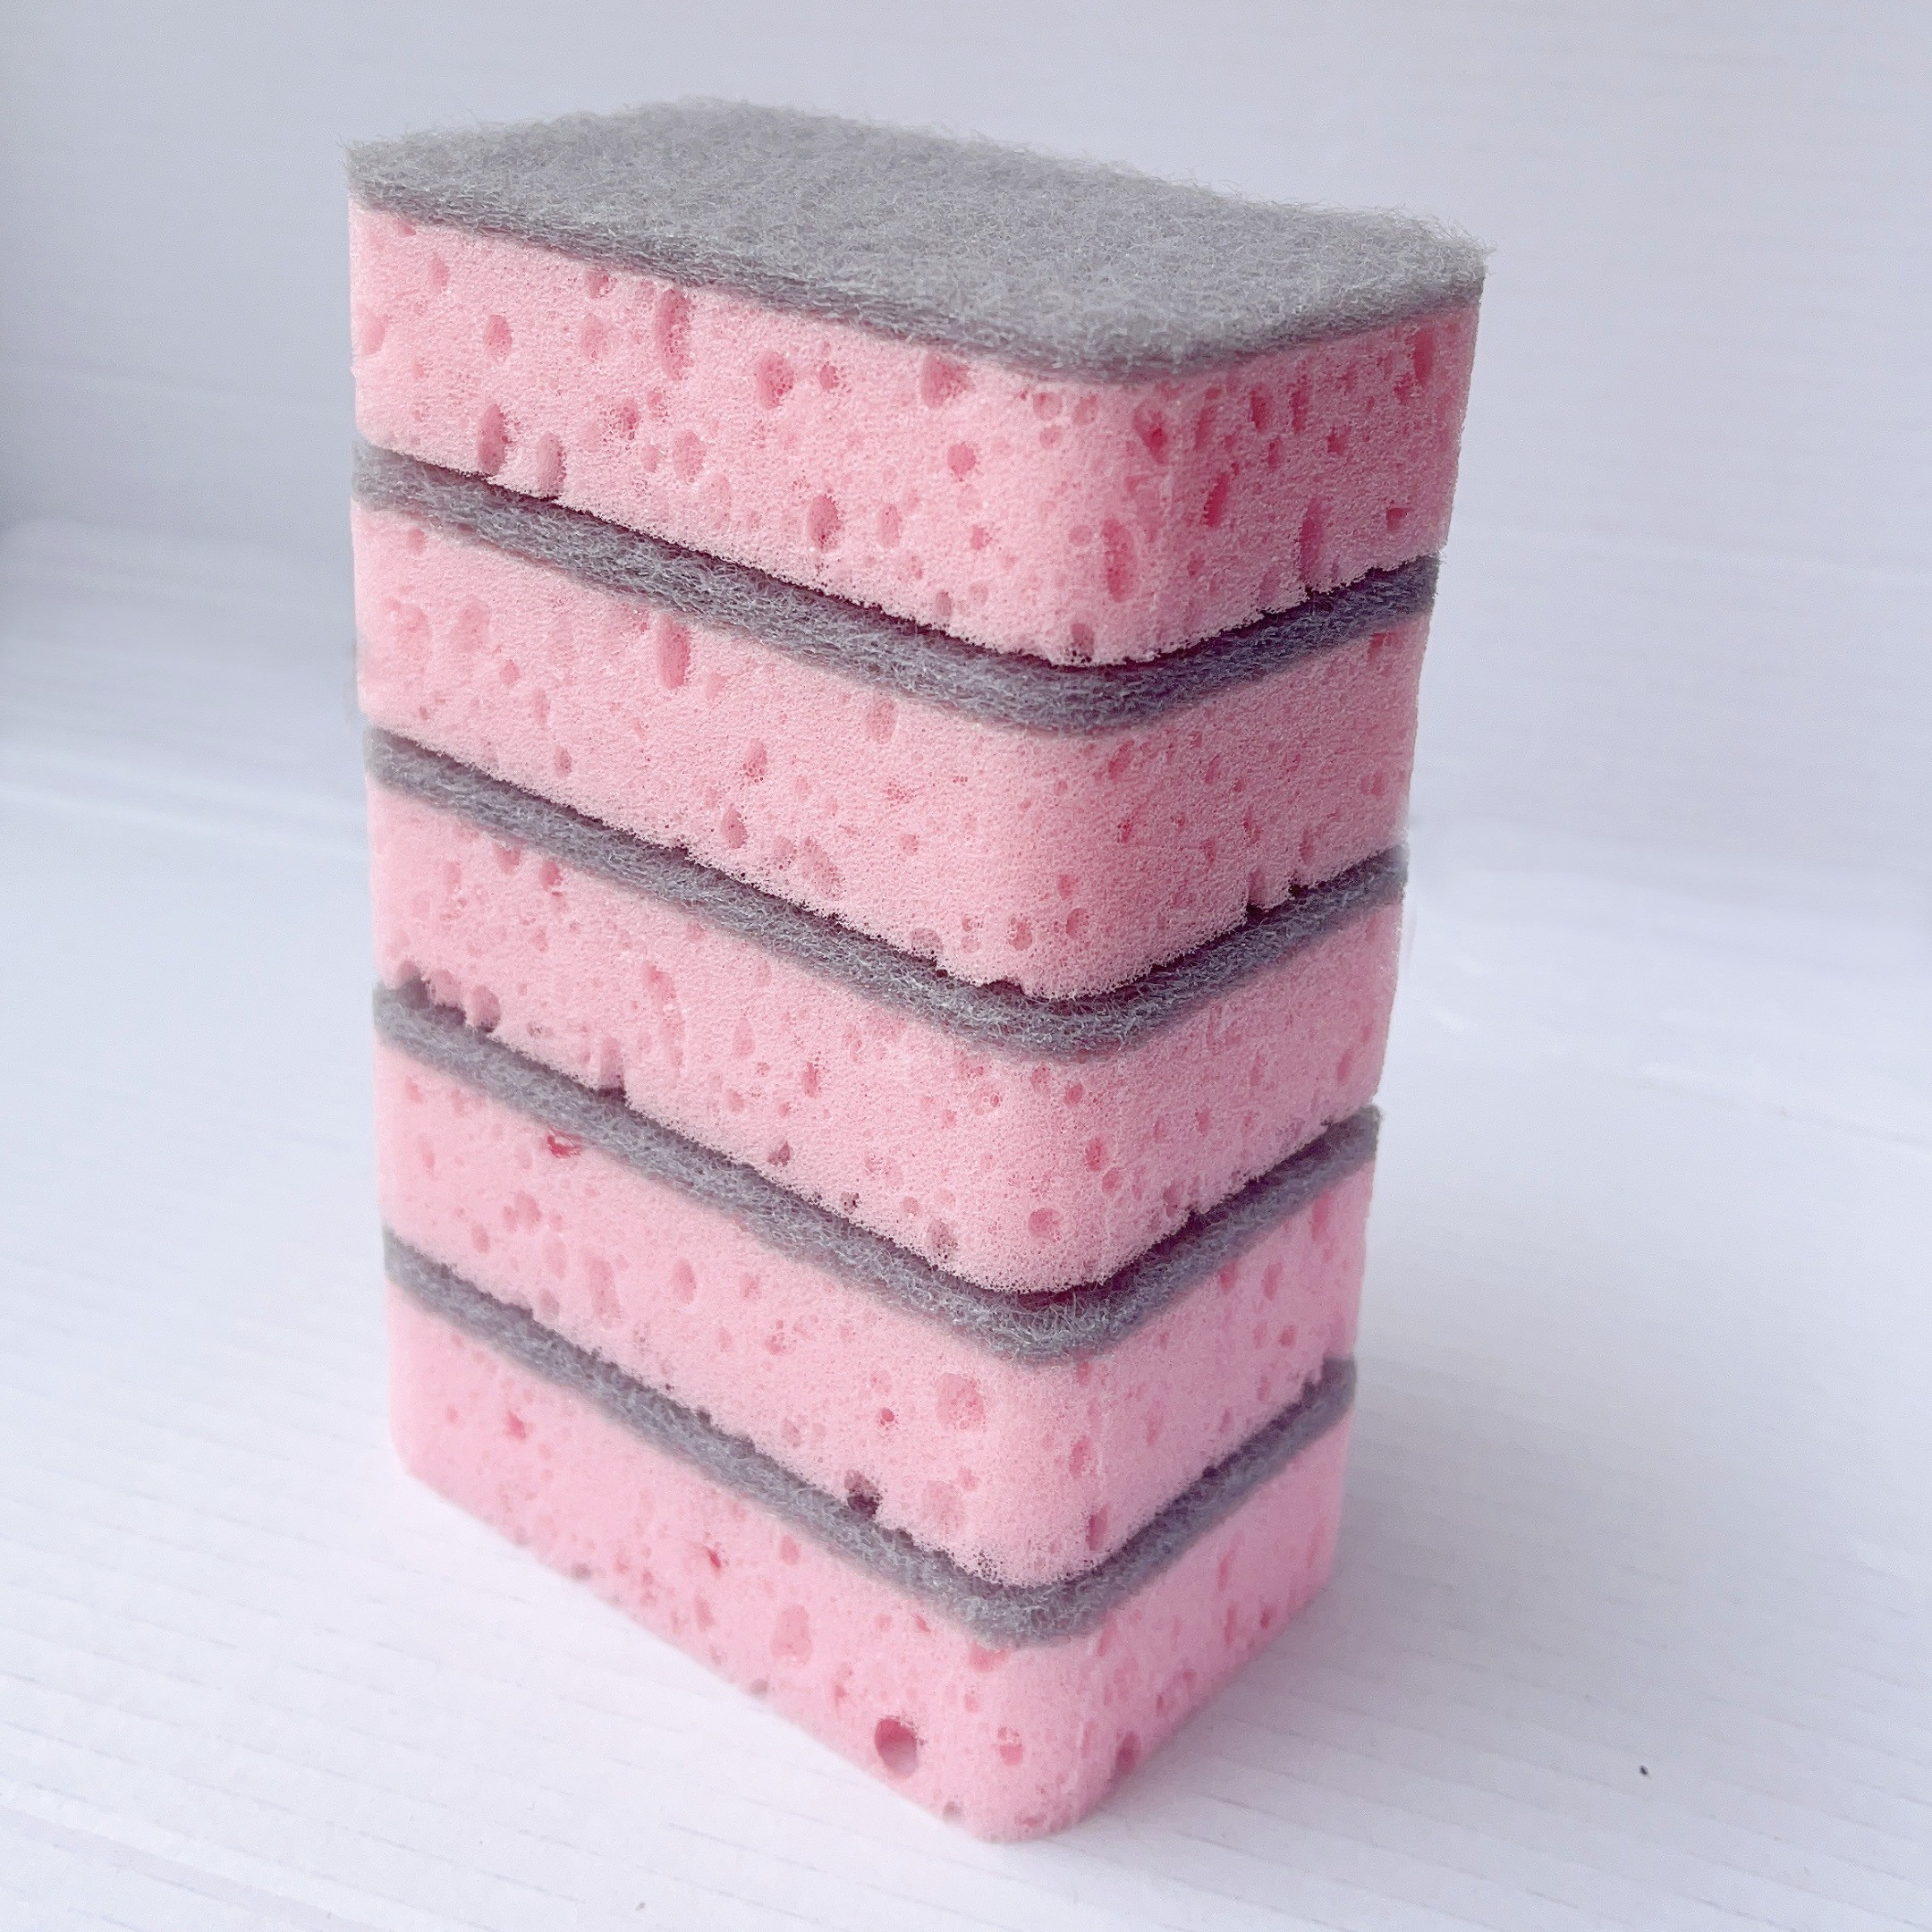 JOYMOOP Esponjas comprimidas, esponjas de celulosa para lavar platos que no  rayan, esponjas naturales para limpieza del hogar, paquete de 12 esponjas